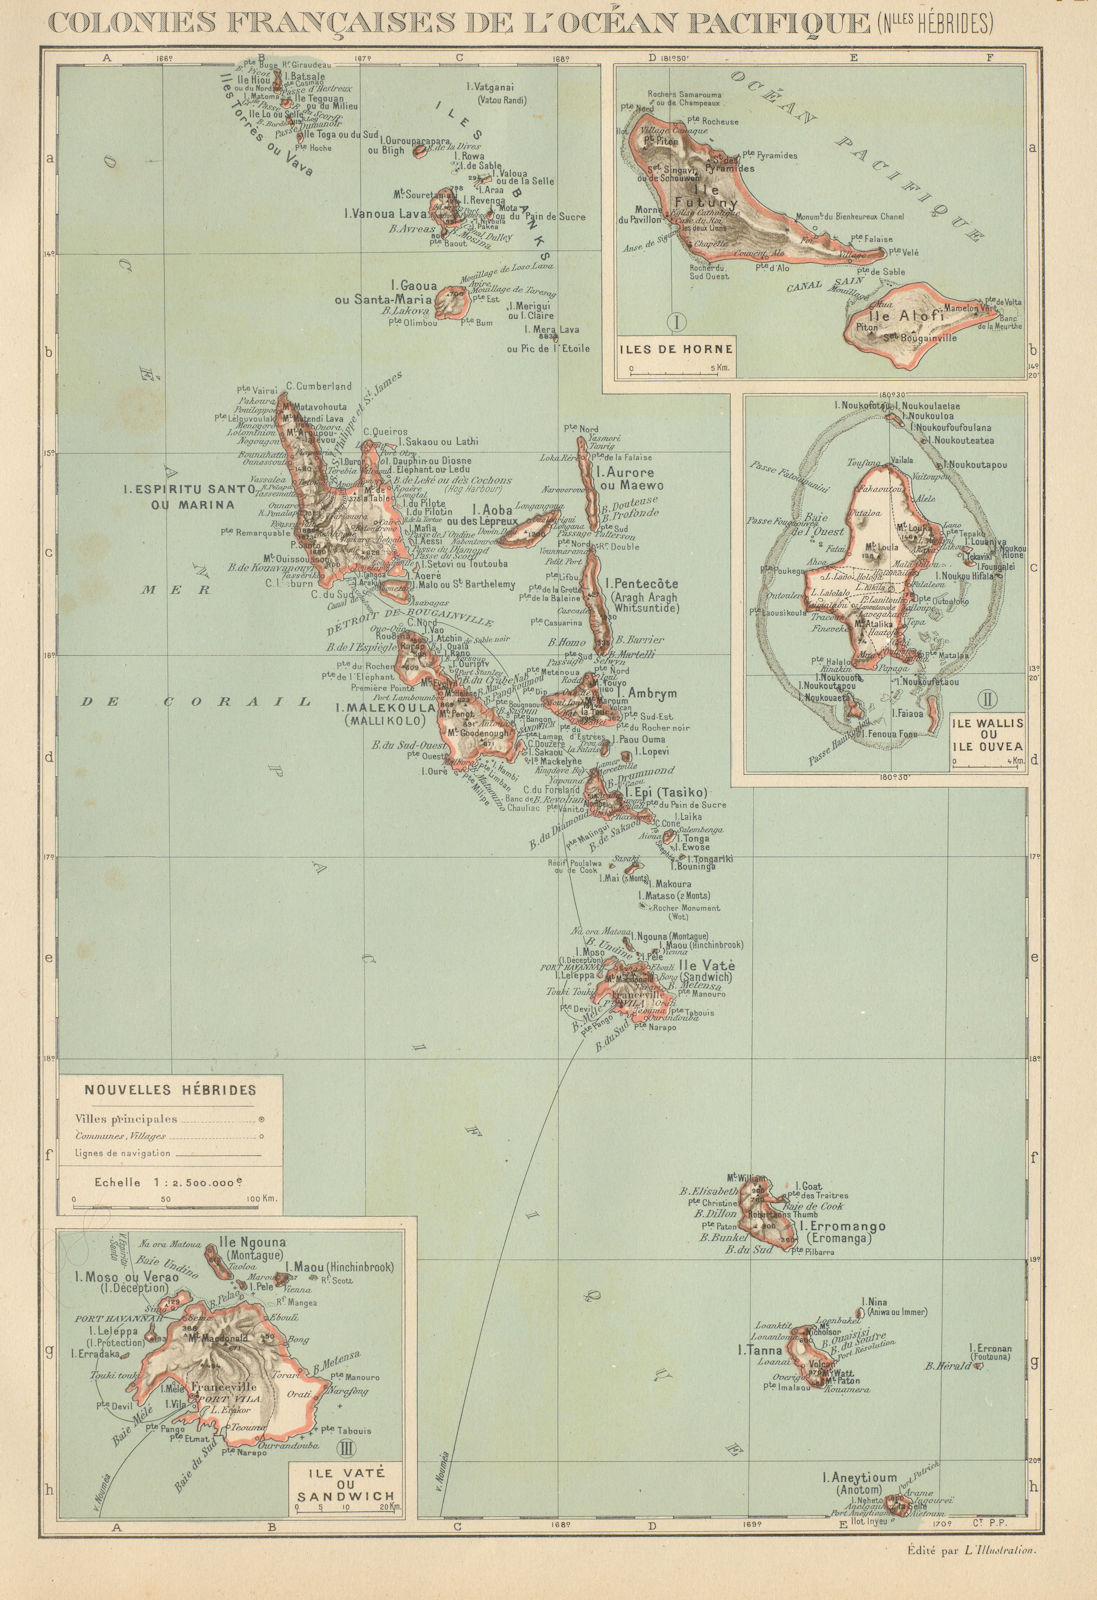 COLONIAL VANUATU. Nouvelles/New Hebrides. Efate Wallis & Futuna. Uvea 1931 map